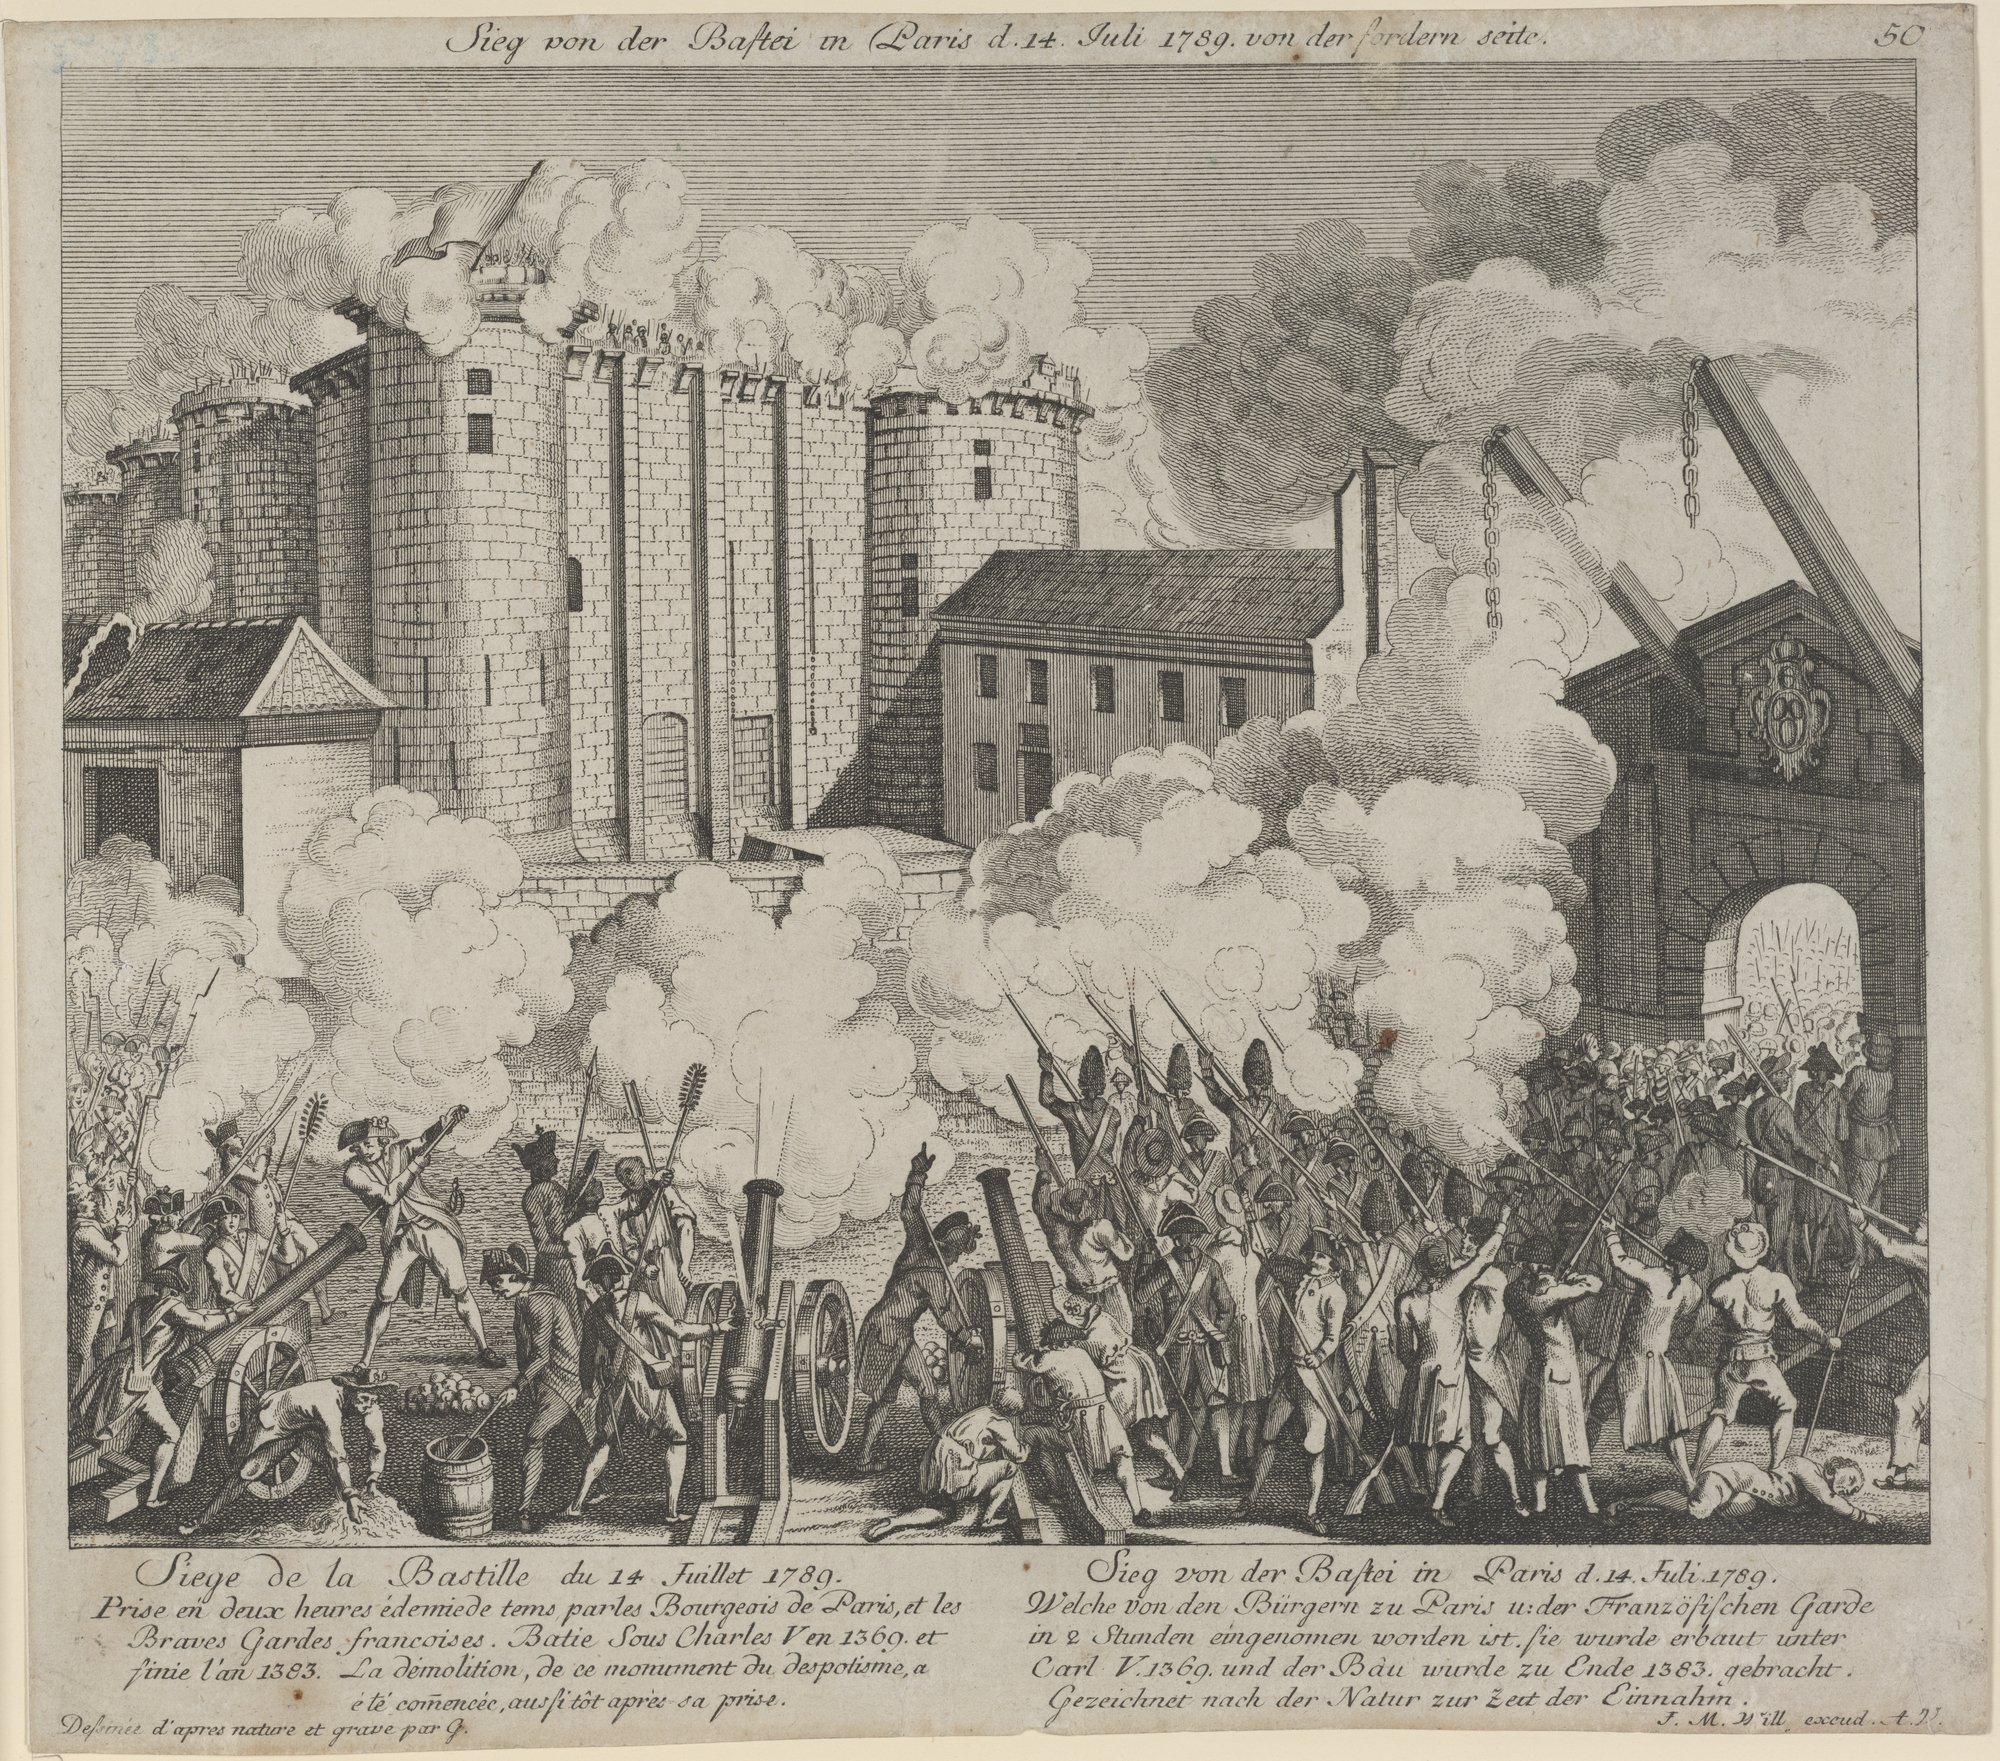 Sieg von der Bastei in Paris d. 14. Juli 1789. von der fordern seite. (Kulturstiftung Sachsen-Anhalt Public Domain Mark)